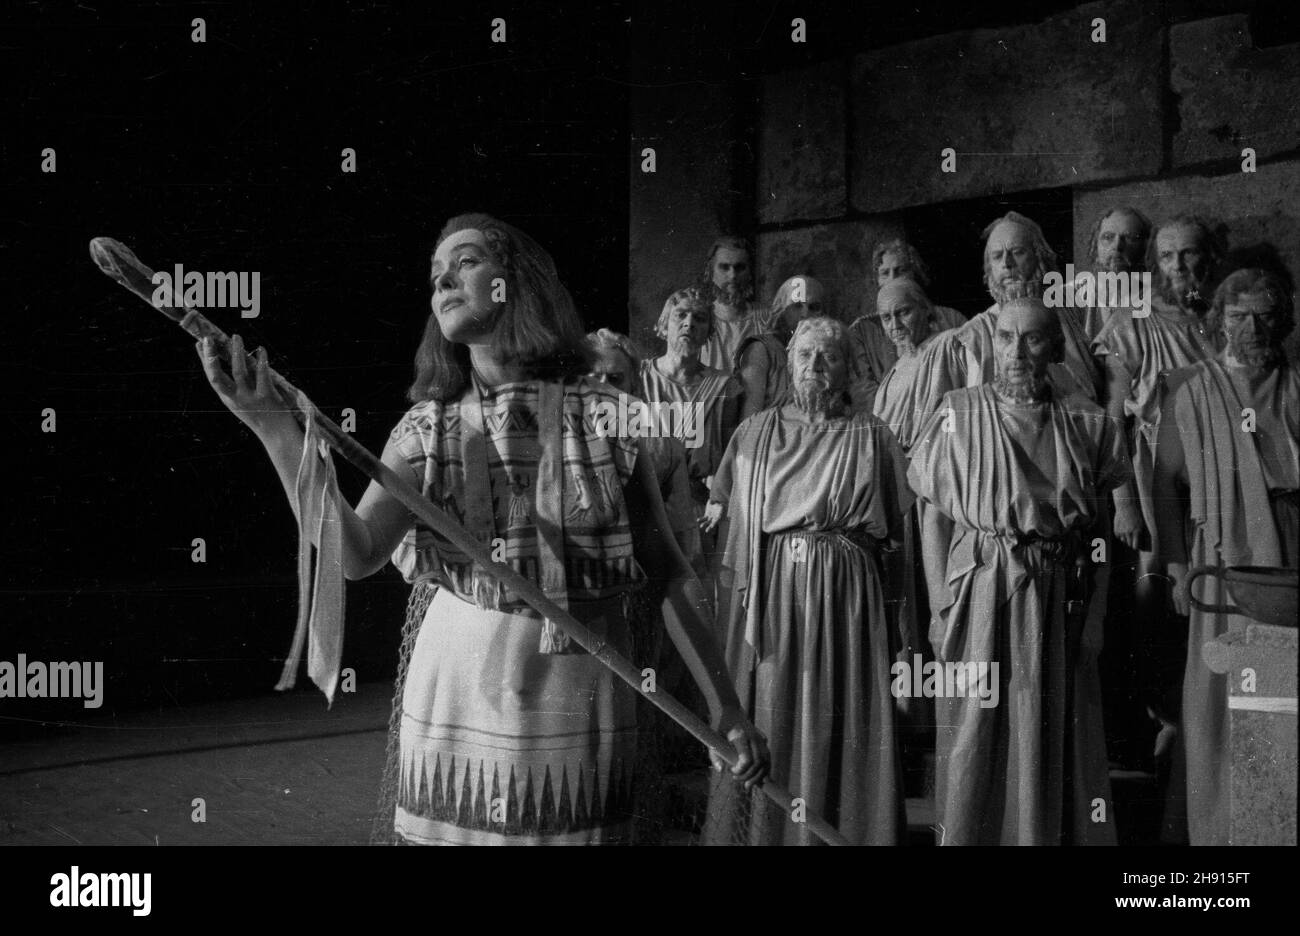 Warszawa, 1947-03. Inscenizacja sztuki Ajschylosa pt. Oresteja w Teatrze Polskim w re¿yserii Arnolda Szyfmana. Premiera mia³a miejsce 20 marca 1947 r. Nz. scena zbiorowa, Chór Starców Argejskich i z lewej Nina Andrycz jako Kasandra.  bb/ms  PAP/W³adys³aw Forbert      Warsaw, March 1947. A stage adaptation of the Oresteia by Aeschylus performed at the Polski Theatre, directed by Arnold Szyfman. Premiered on 20 March 1947. Pictured: a crowd scene, the Chorus of Aegean Old Men, on the left Nina Andrycz as Cassandra.   bb/ms  PAP/Wladyslaw Forbert    Dok³adny dzieñ wydarzenia nieustalony. Stock Photo